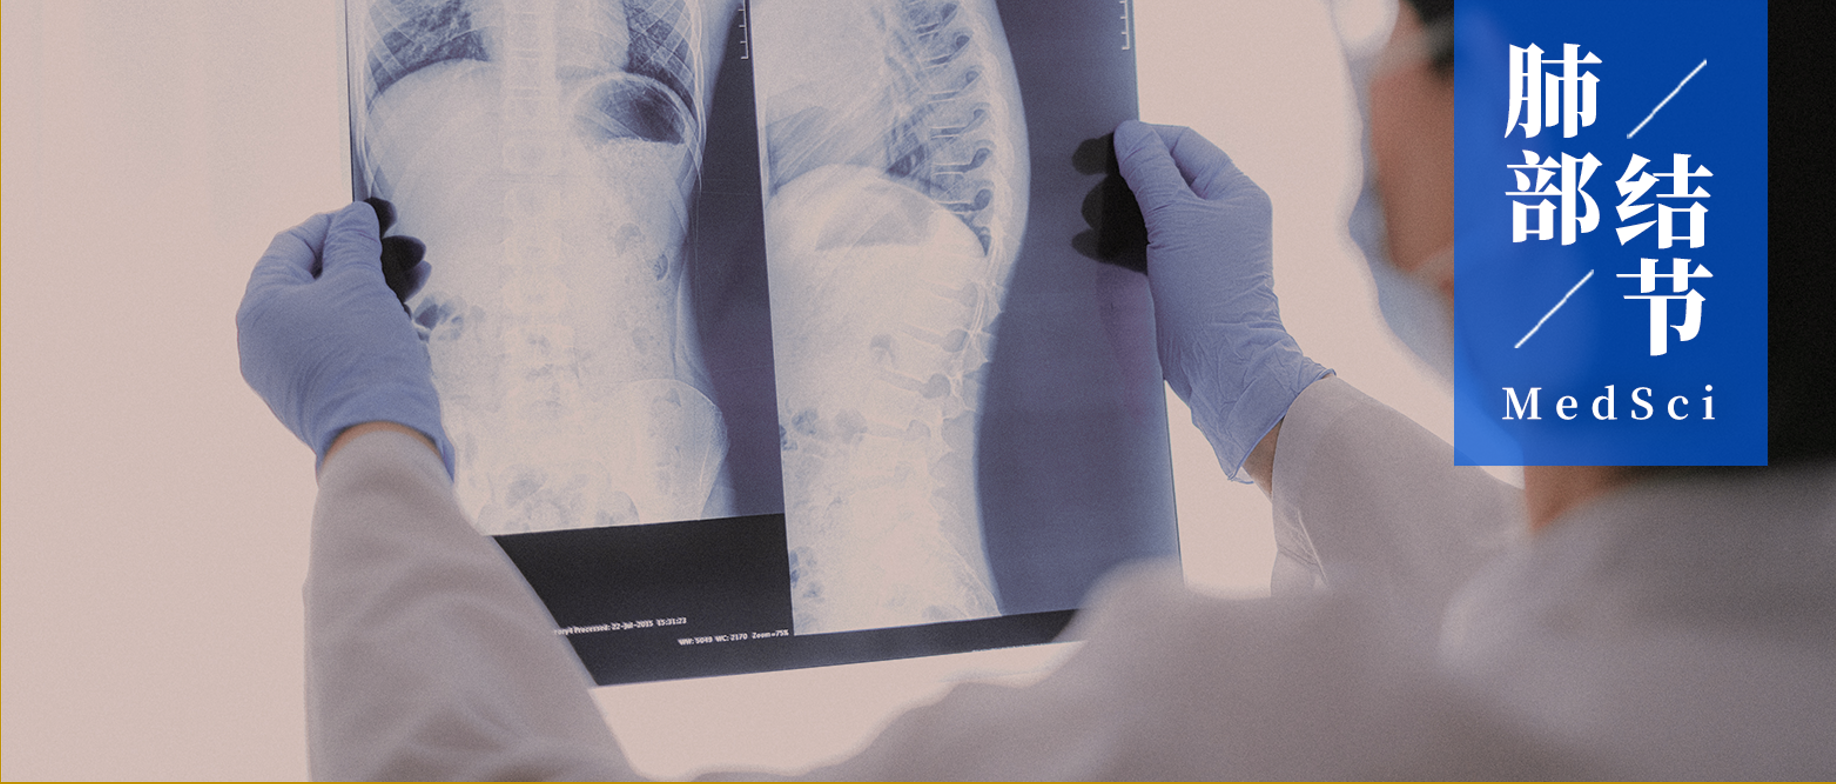 15个常见的恶性肺结节影像特征 | 建议收藏